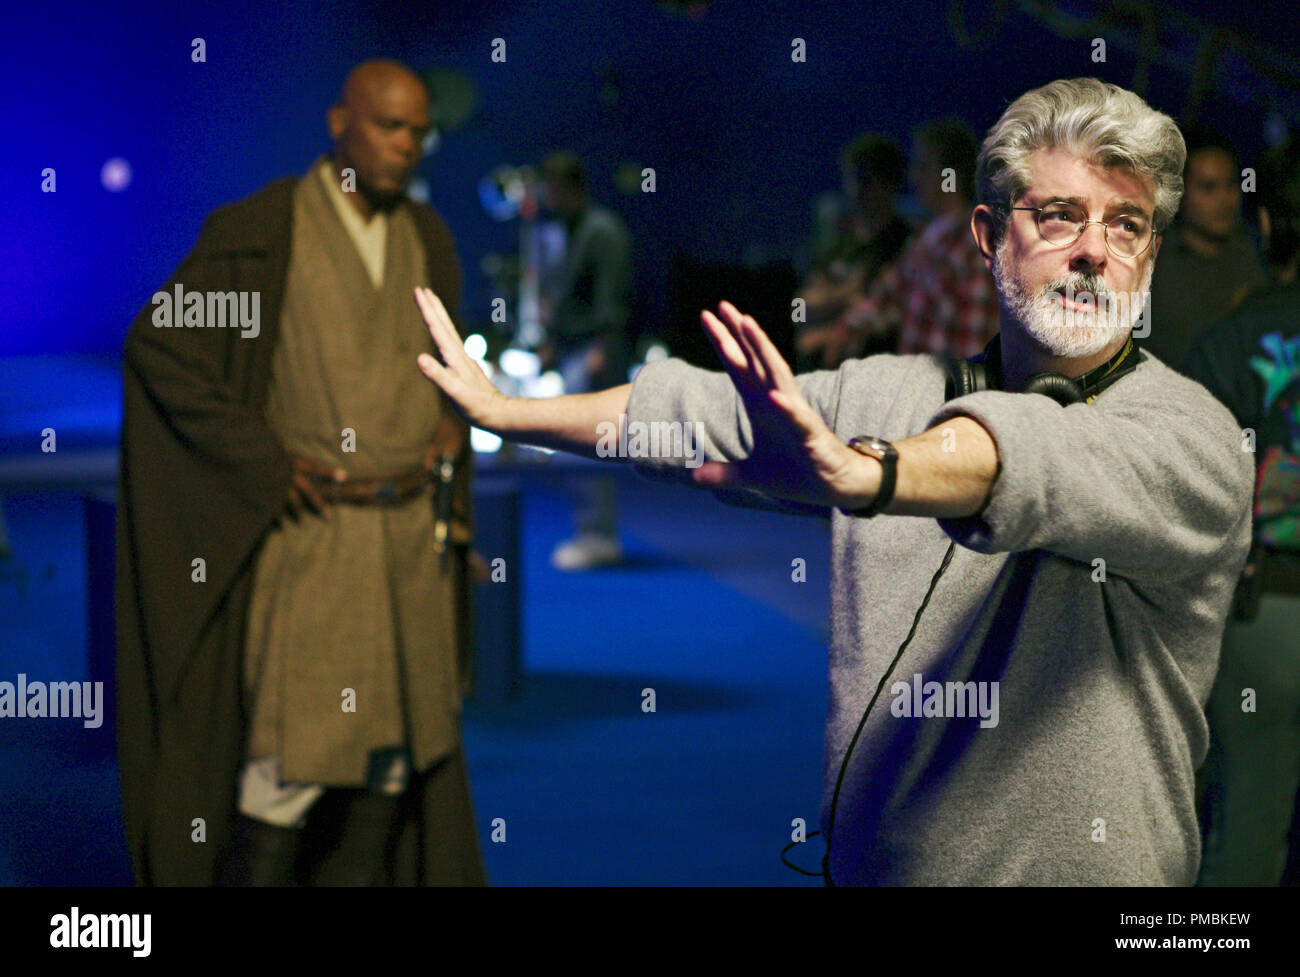 Director George Lucas de Star Wars frames una escena de Star Wars: Episodio III La venganza de los Sith mientras que el actor Samuel L. Jackson, quien juega Jedi Mace Windu, mira. TM & © 2005 Lucasfilm Ltd. Todos los derechos reservados. Foto de stock